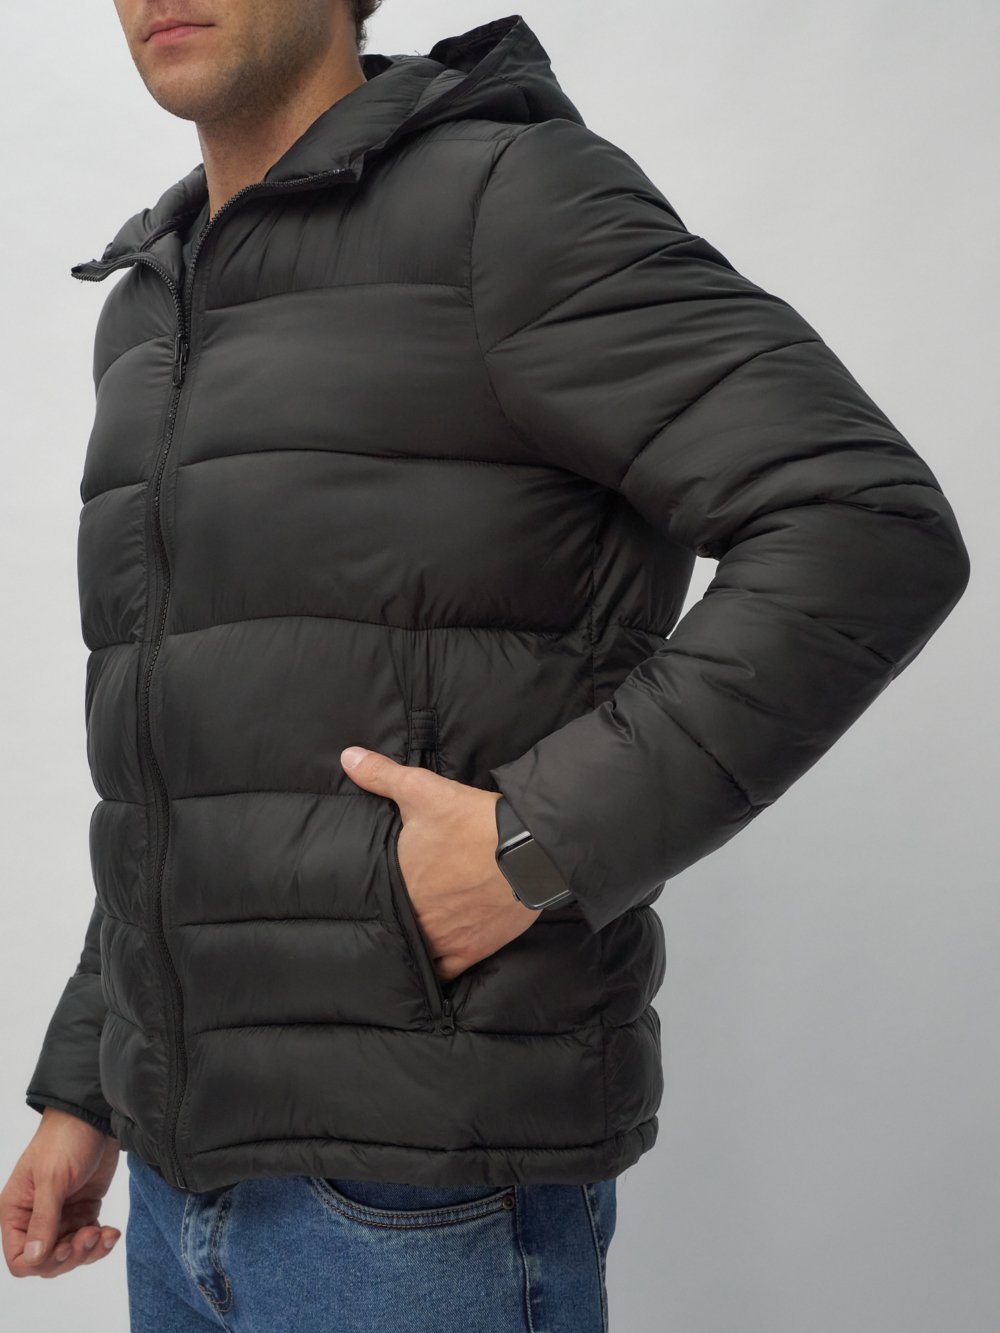 Купить куртку трансформер 3 в 1 оптом от производителя недорого в Москве 2359Ch 1